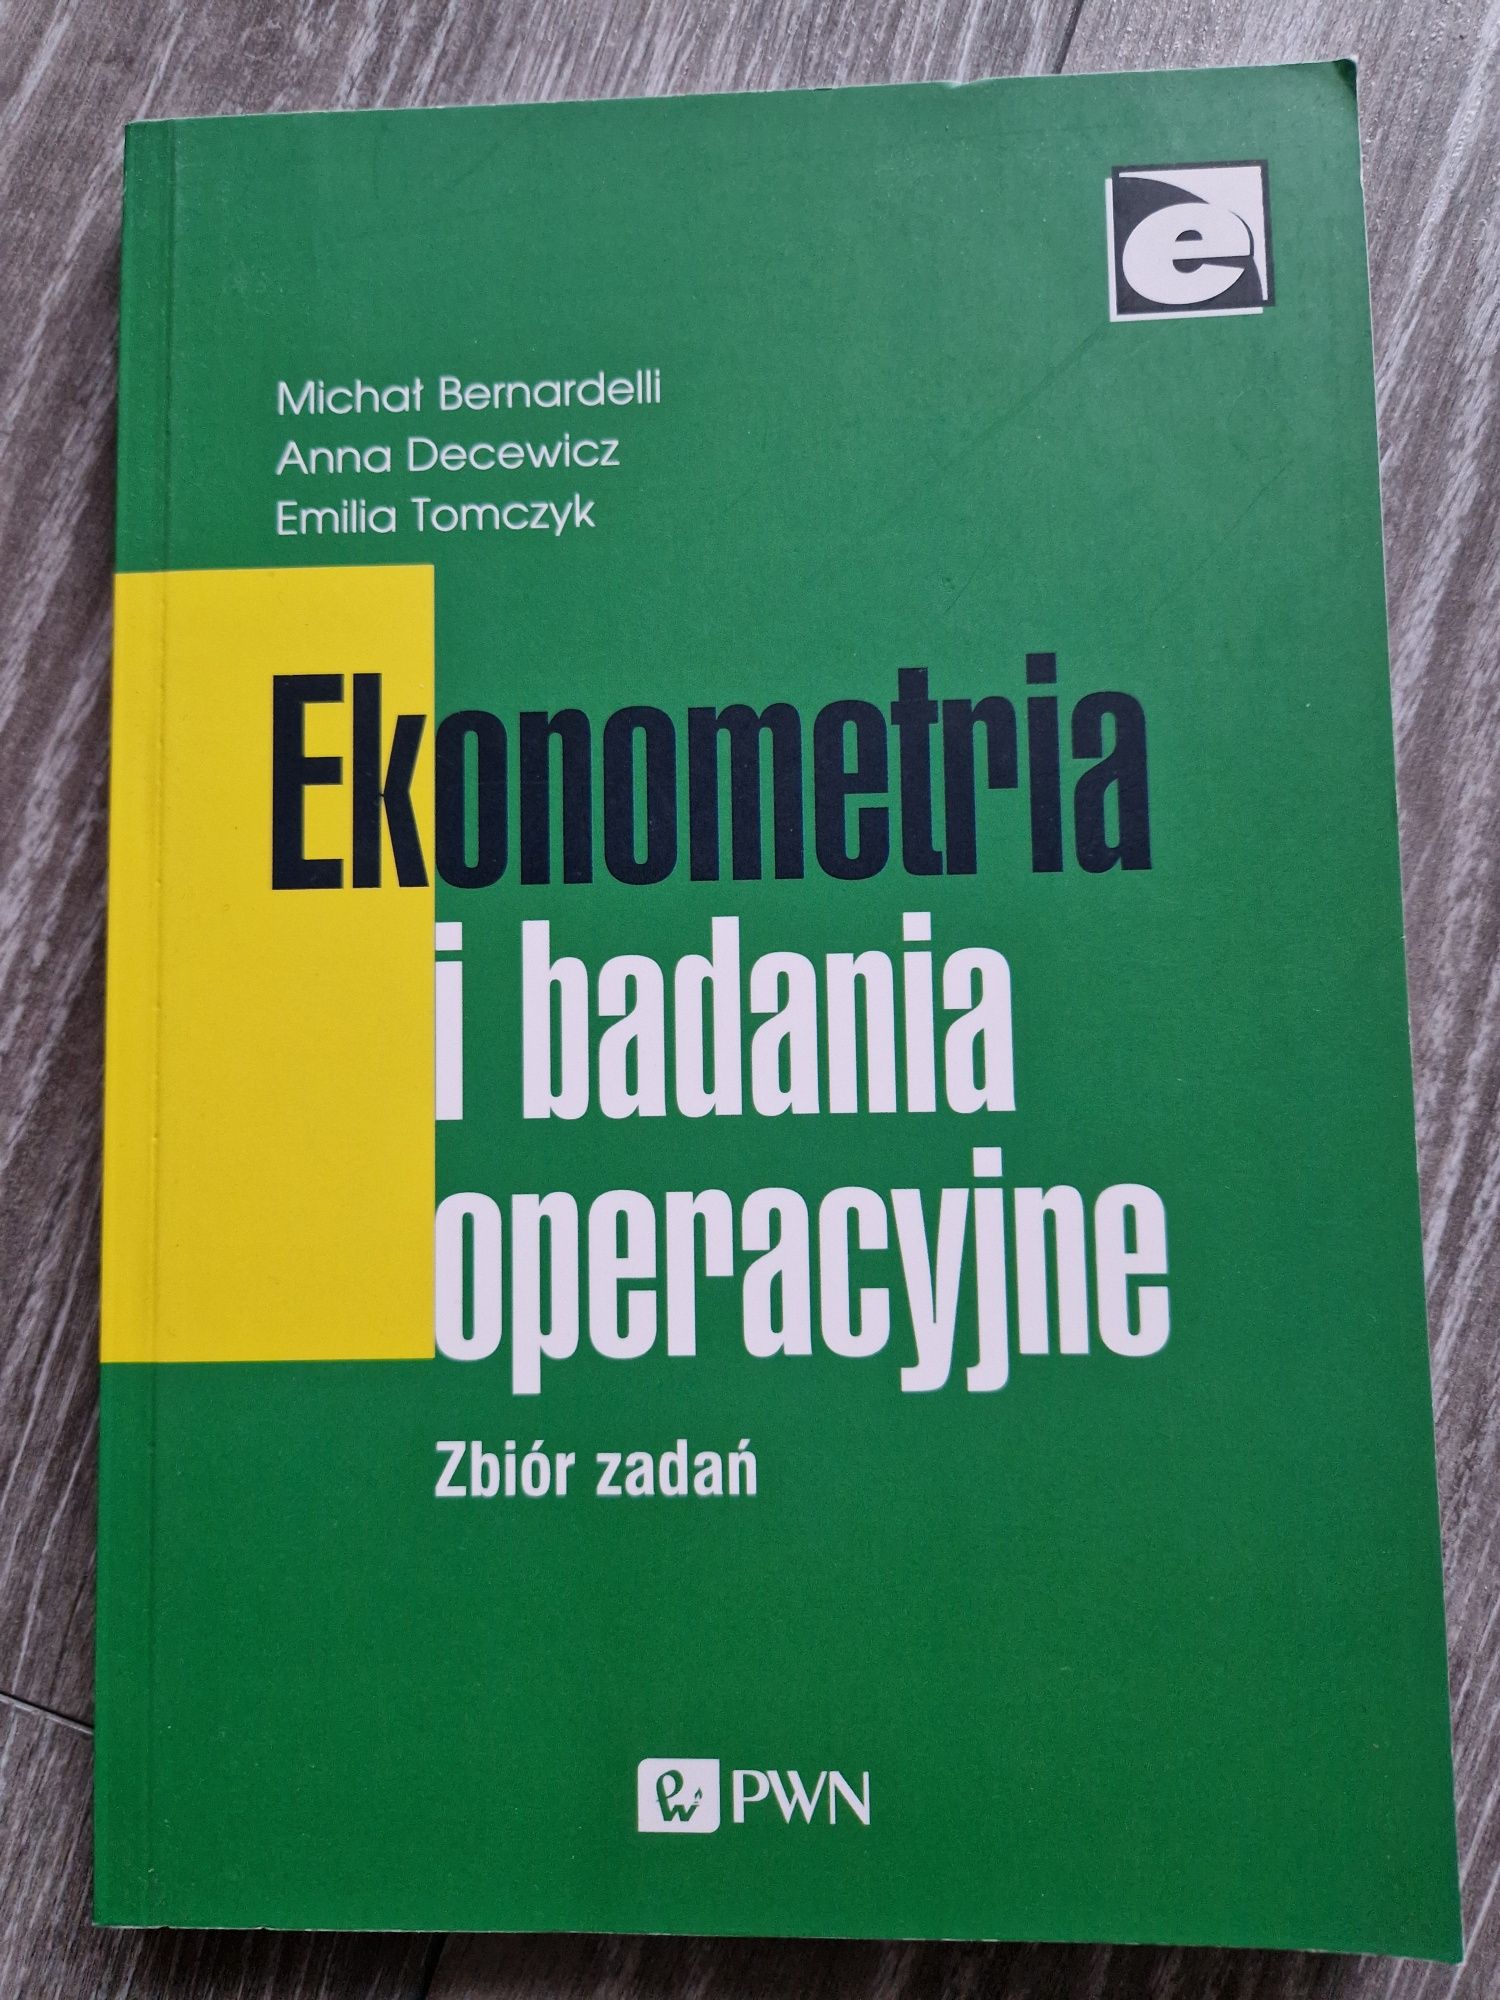 Ekonometria i badania operacyjne zbiór zadań Bernardelli Dacewicz